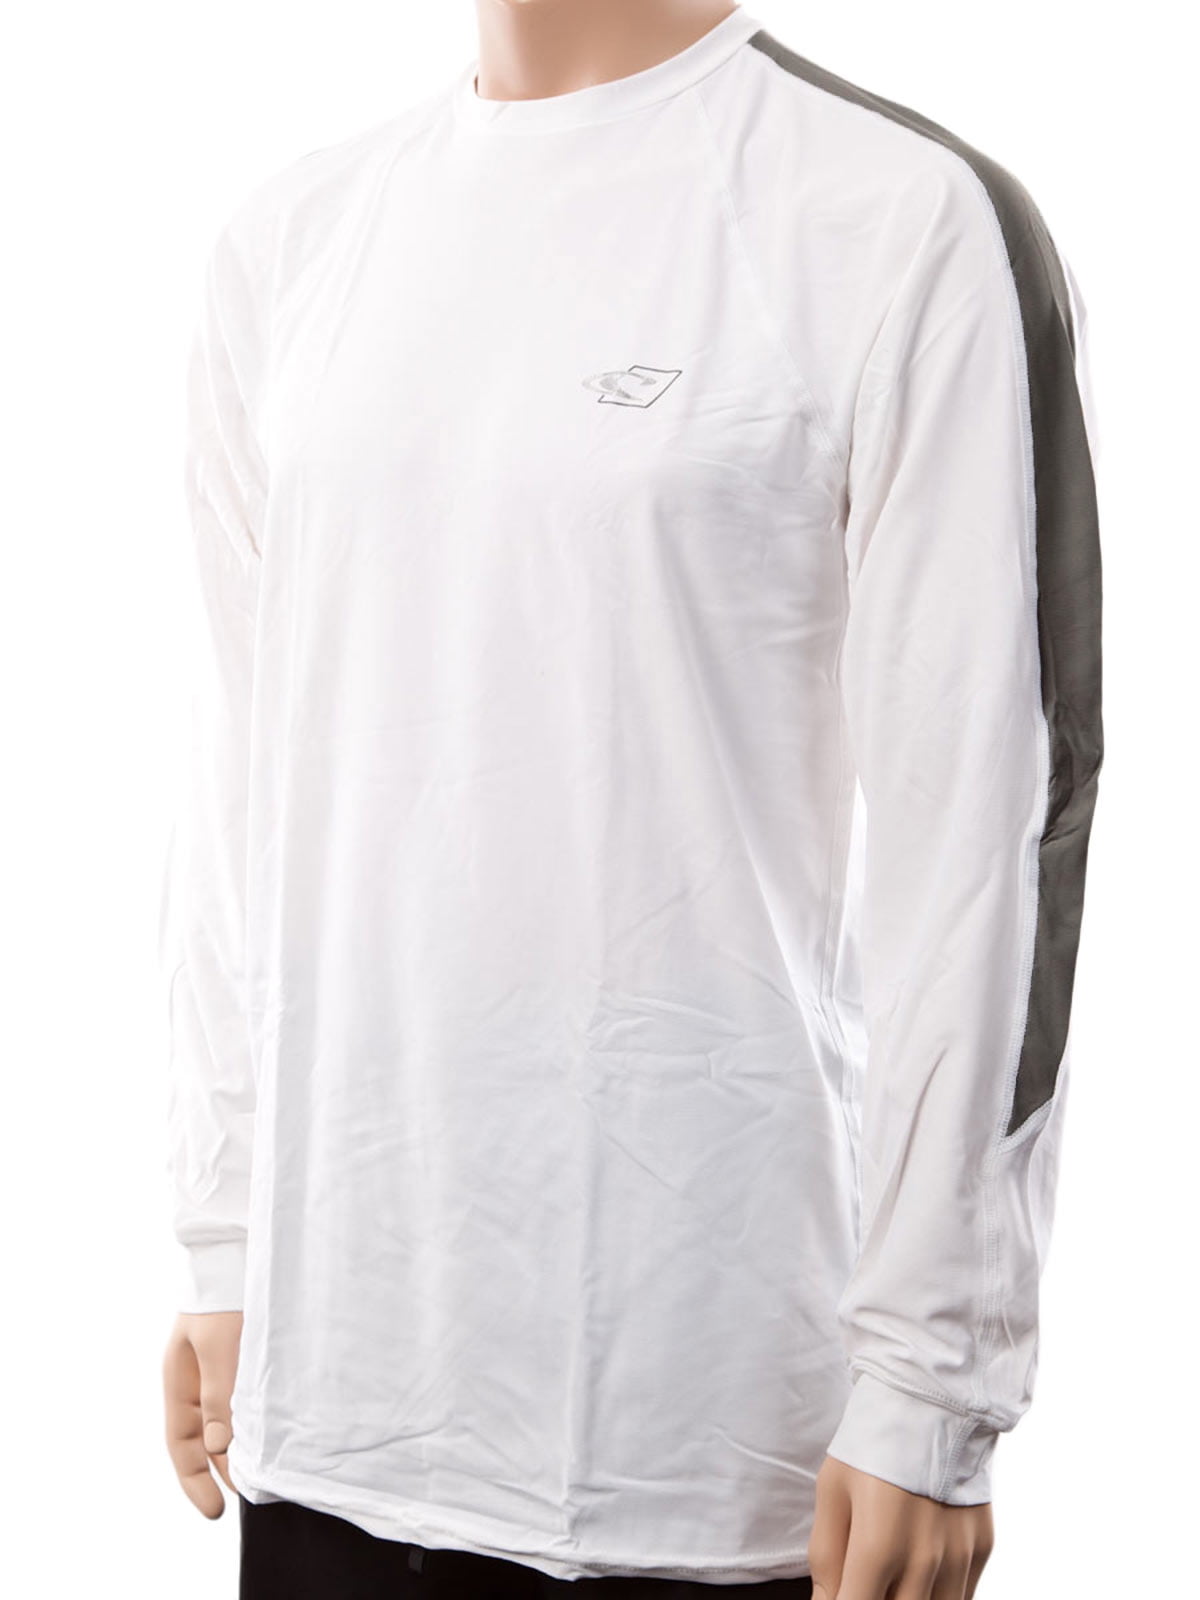 O'Neill men's Tech 24/7 long sleeve sun shirt 3XL White/graphite (4242) 